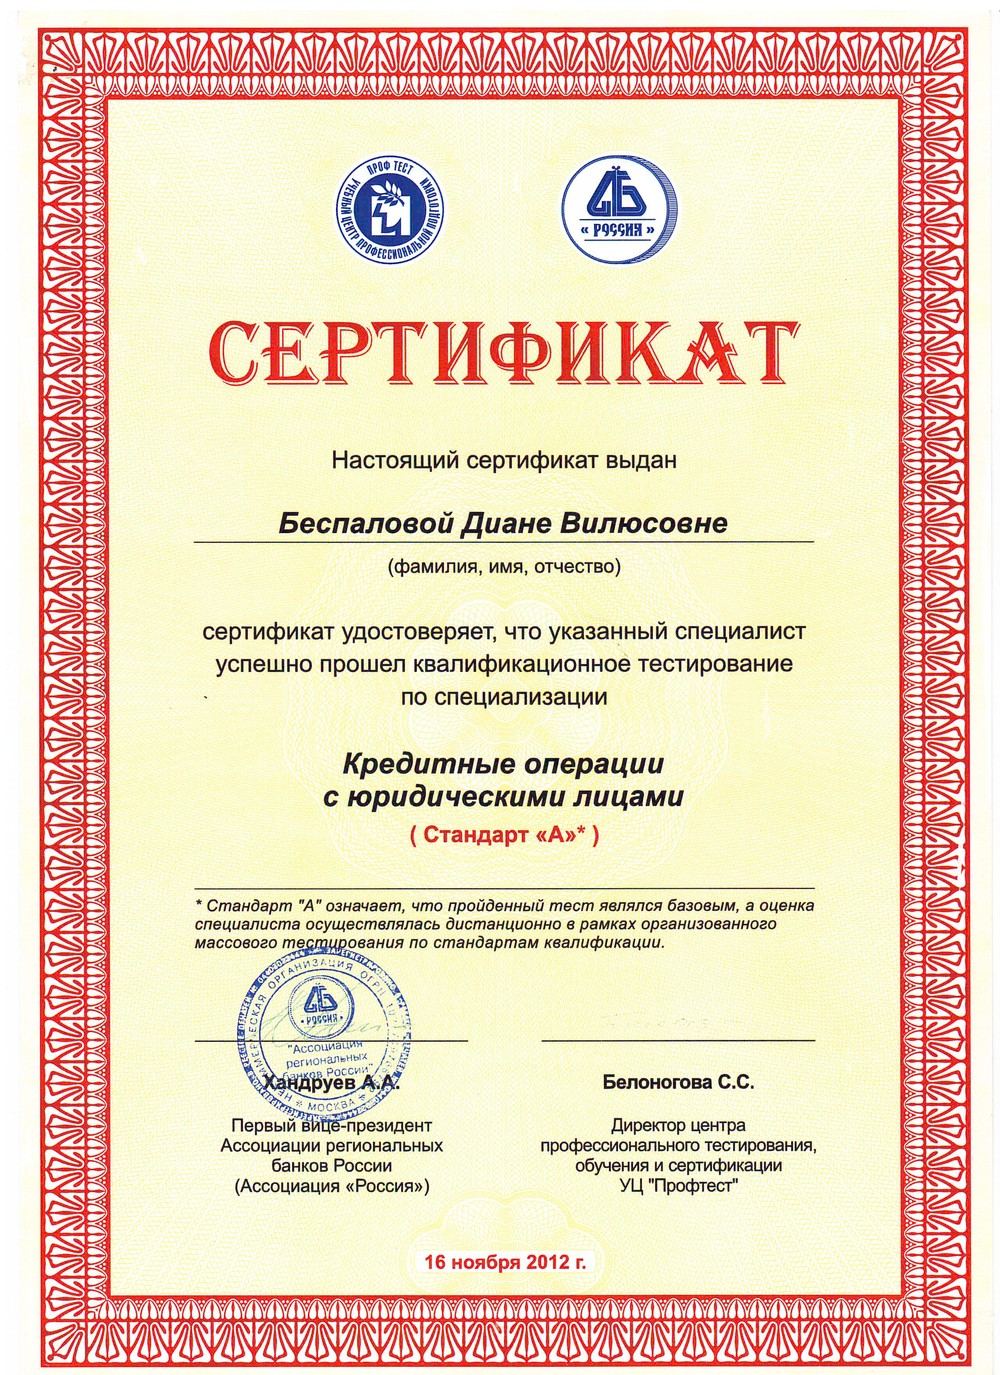 Сертификат на правильное питание. Сертификат. Сертификат пример. Сертификат образец. Сертификат образец заполнения.